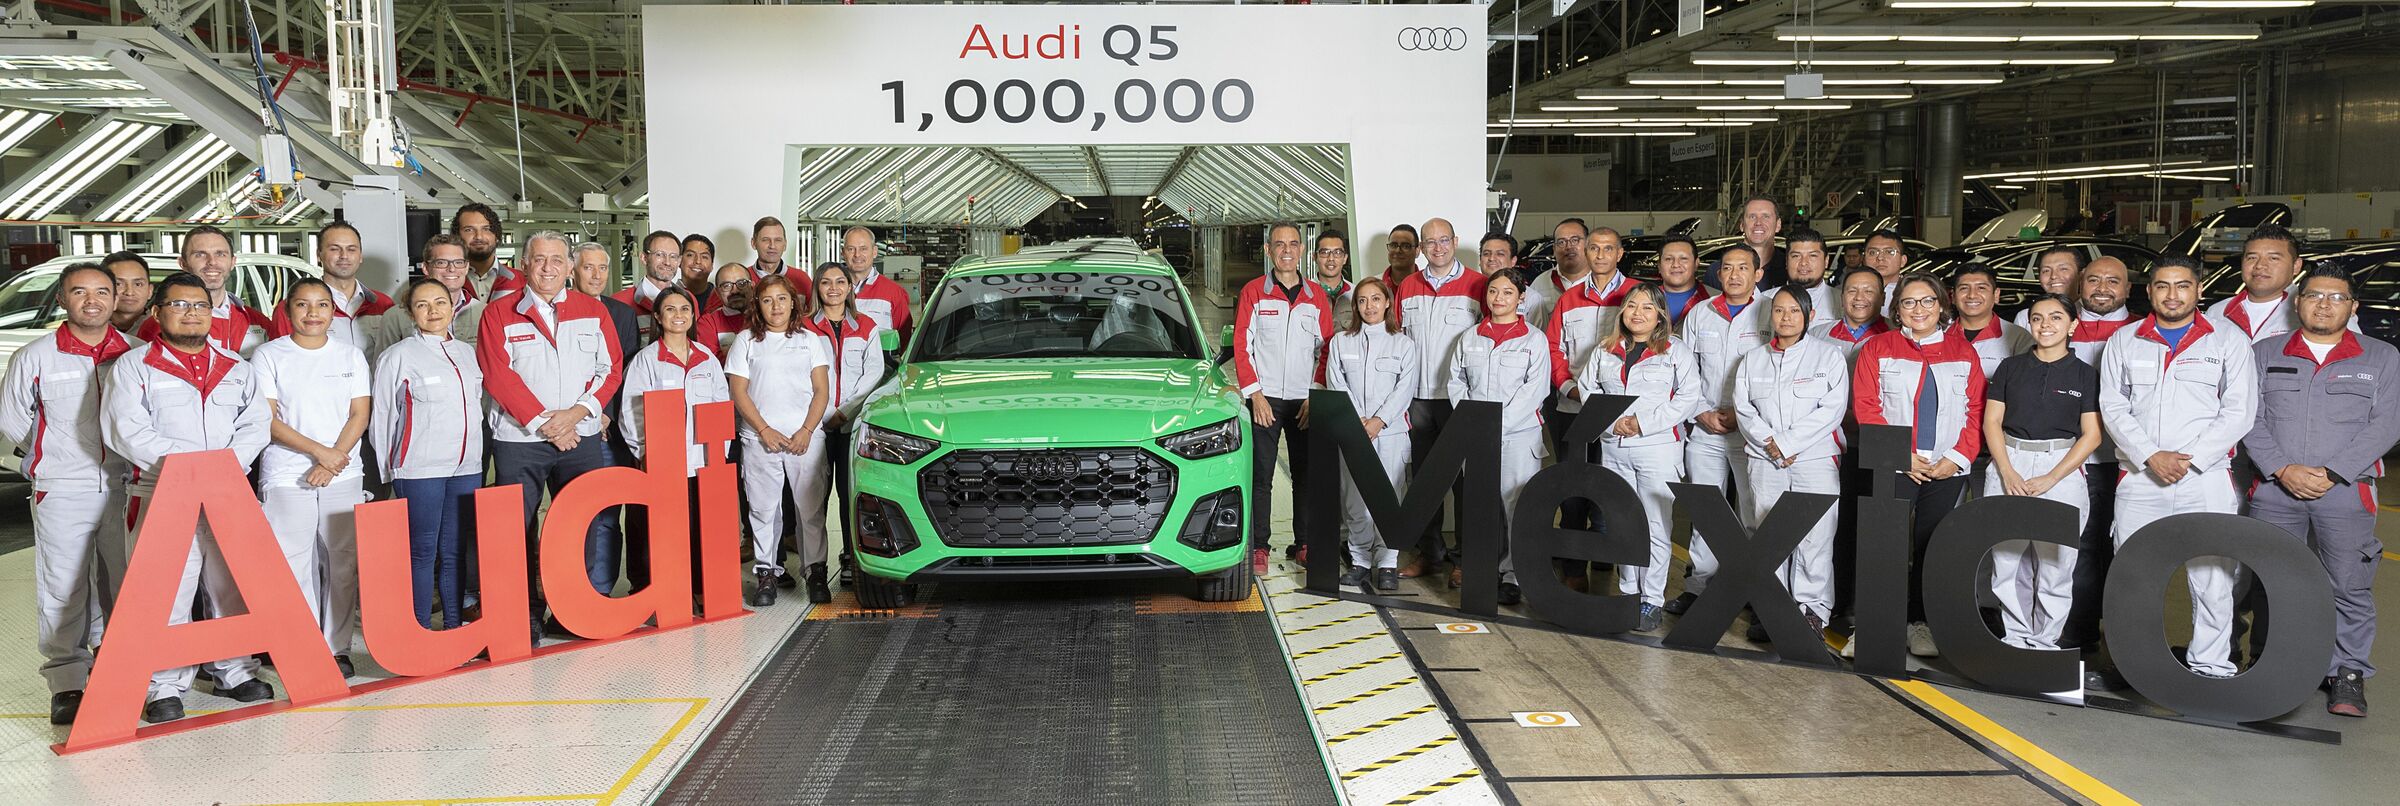 Audi México celebra la unidad 1 millón de Q5 en nuestro país